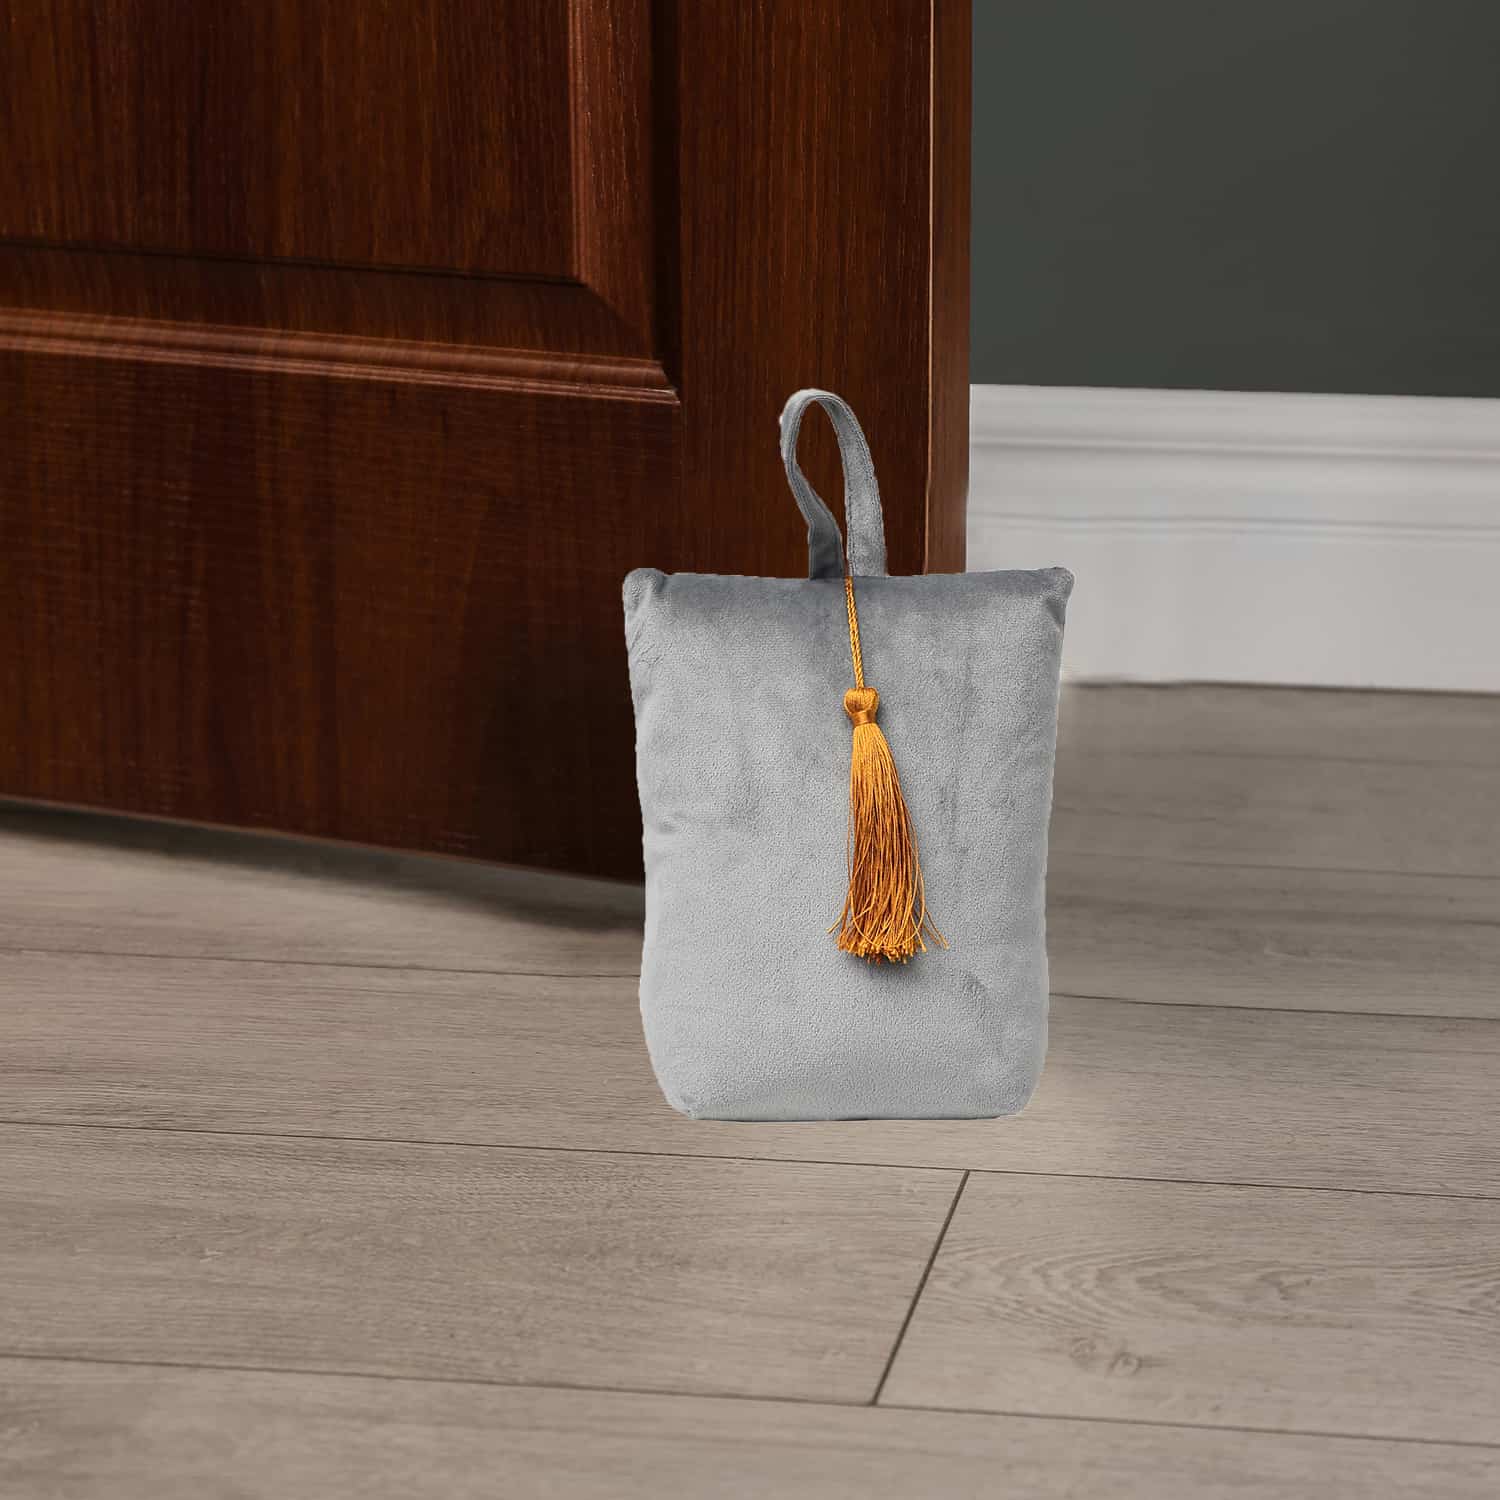 Velvet Fabric Bag Door Stop Interior Weighted Floor 2.2 lbs Light Grey